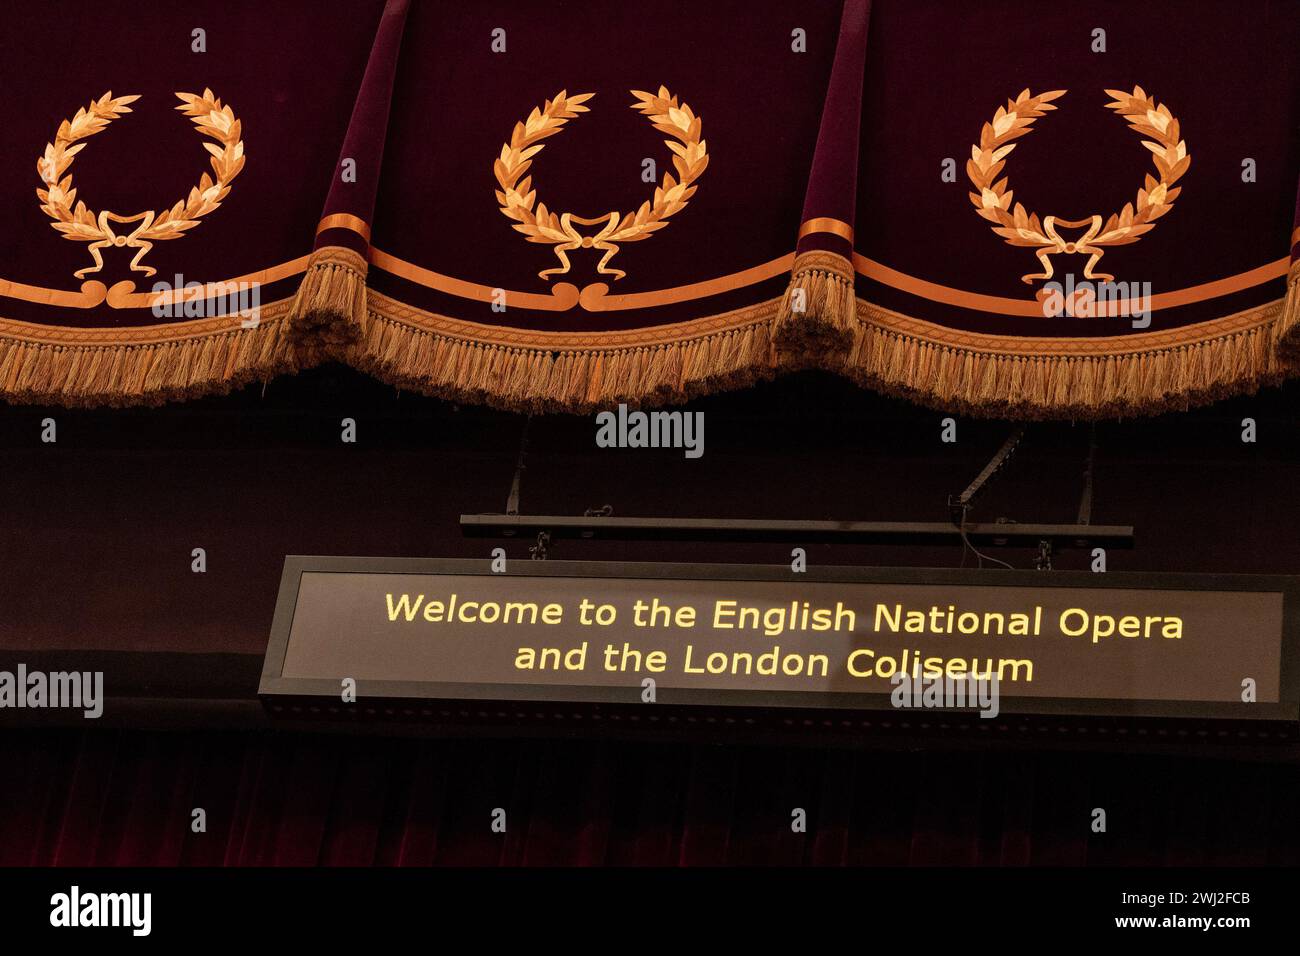 Benvenuti all'English National Opera e al London Coliseum, esposizione digitale pre-spettacolo Foto Stock